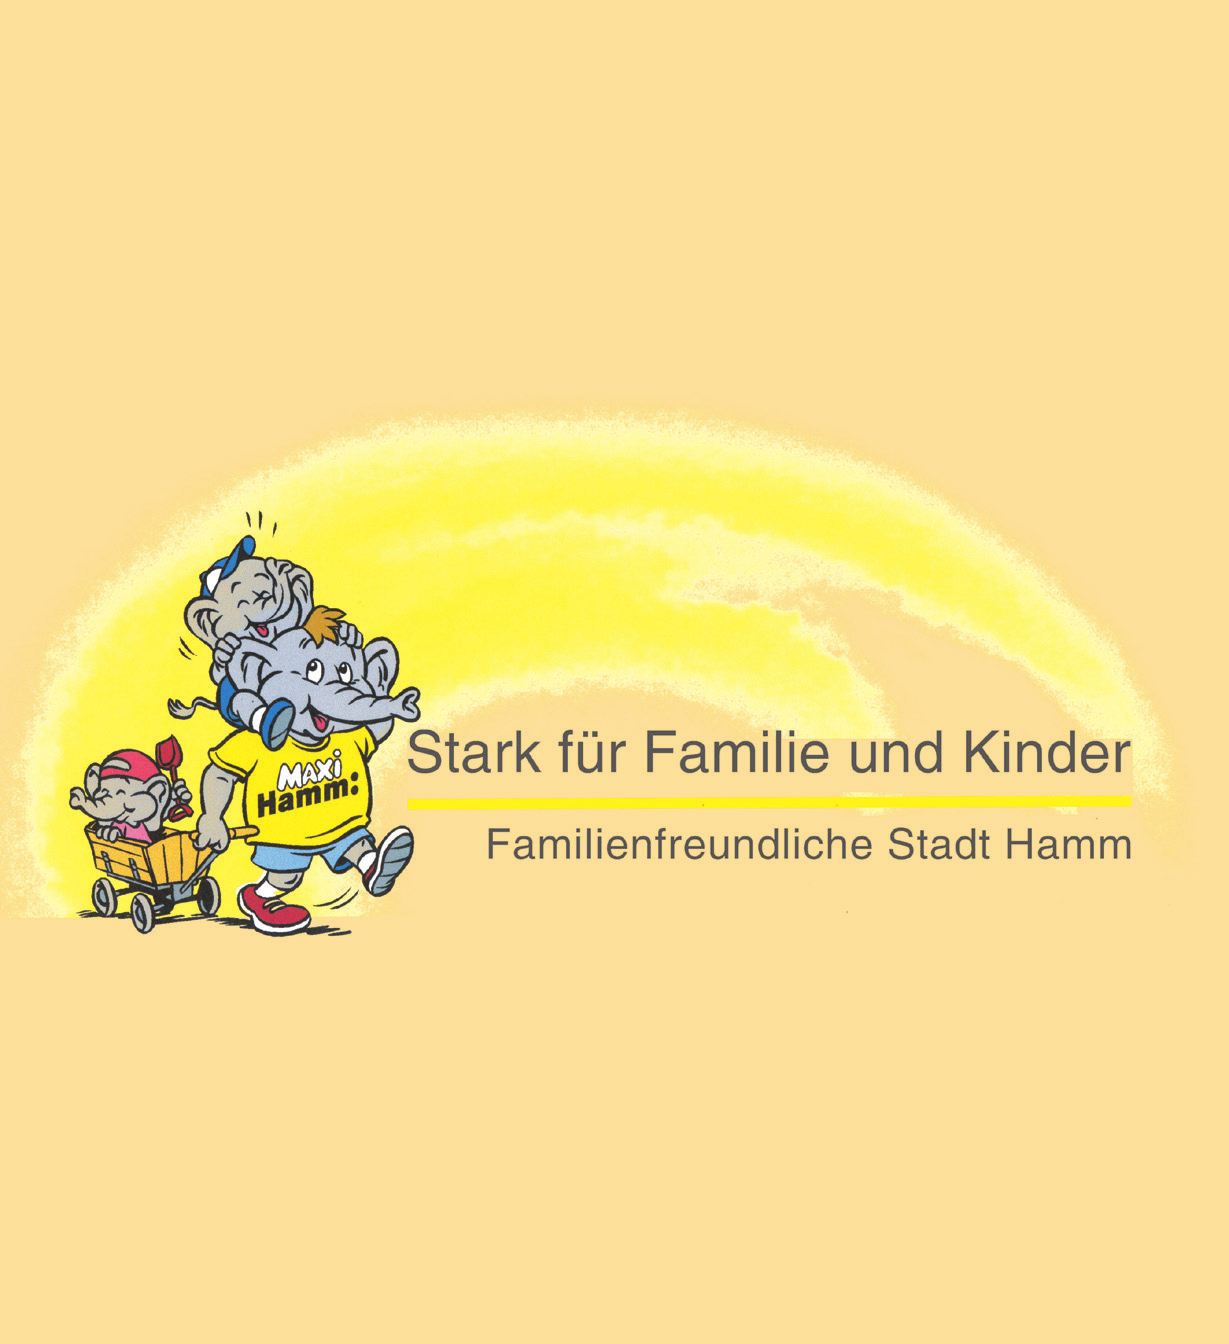 Bei Rückfragen stehen wir Ihnen gerne zur Verfügung. 52 Stadt Hamm Familienbüro Fach- und Geschäftsstelle Netzwerkkoordination Frühe Hilfen Elternschule Hamm e.v.